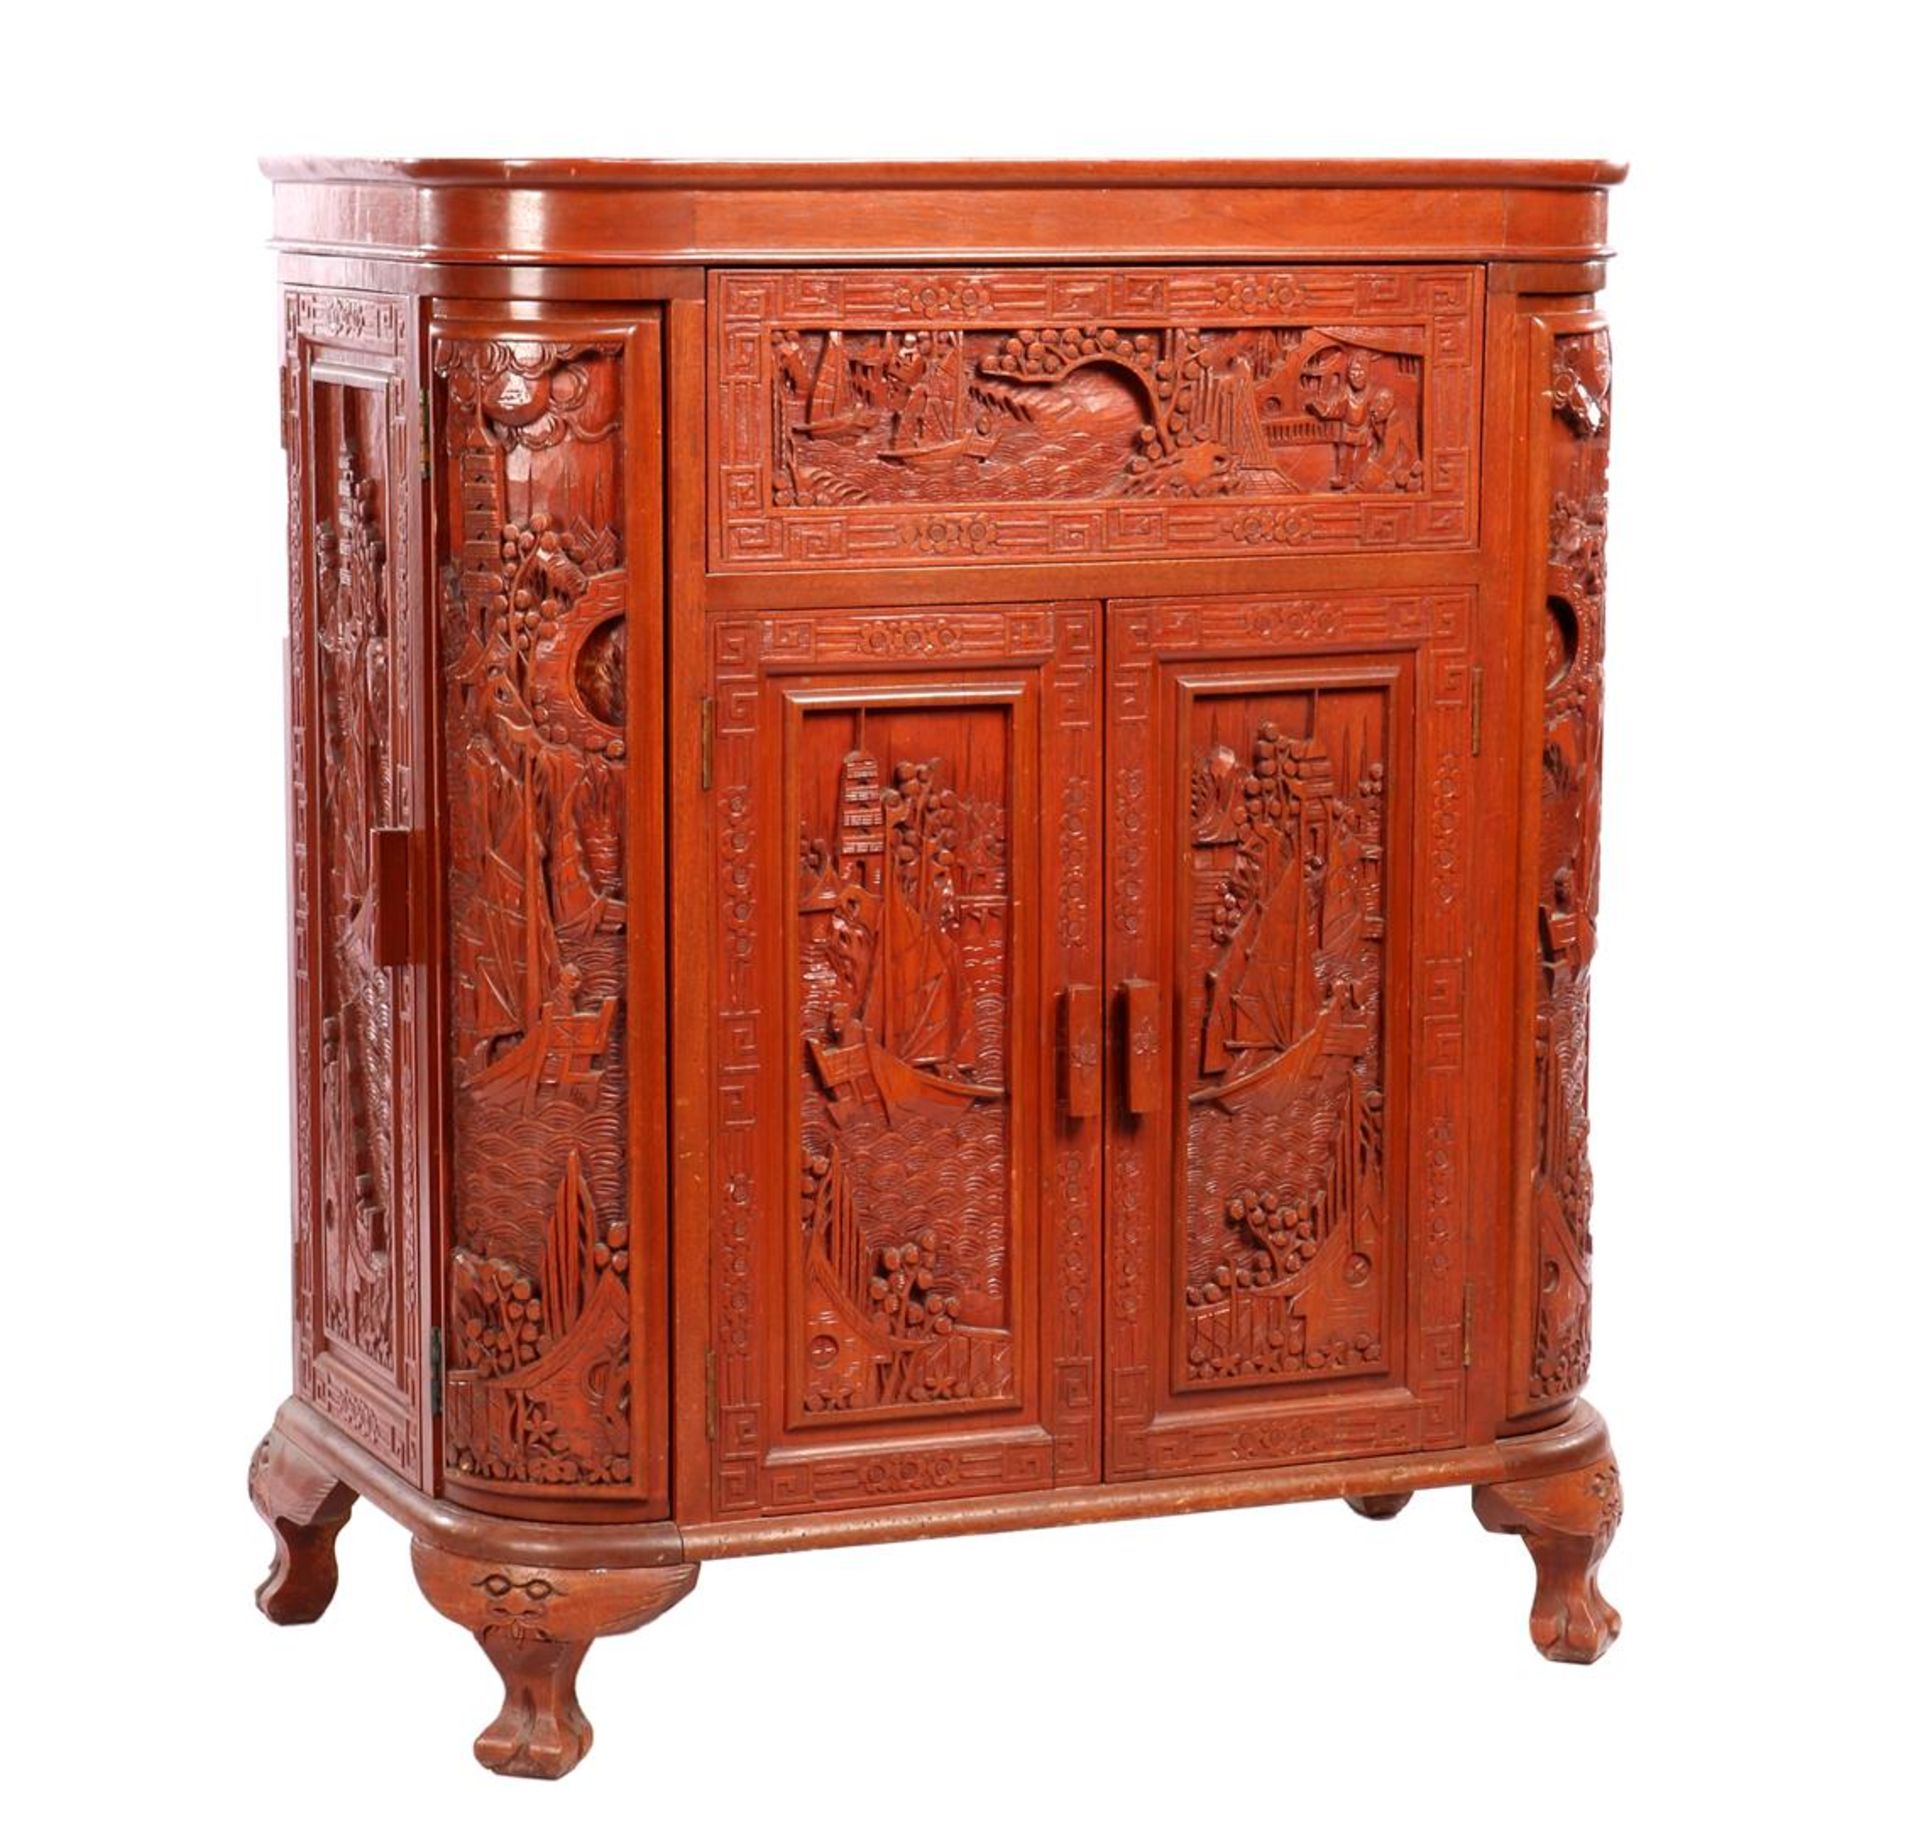 Oriental bar furniture - Image 5 of 6